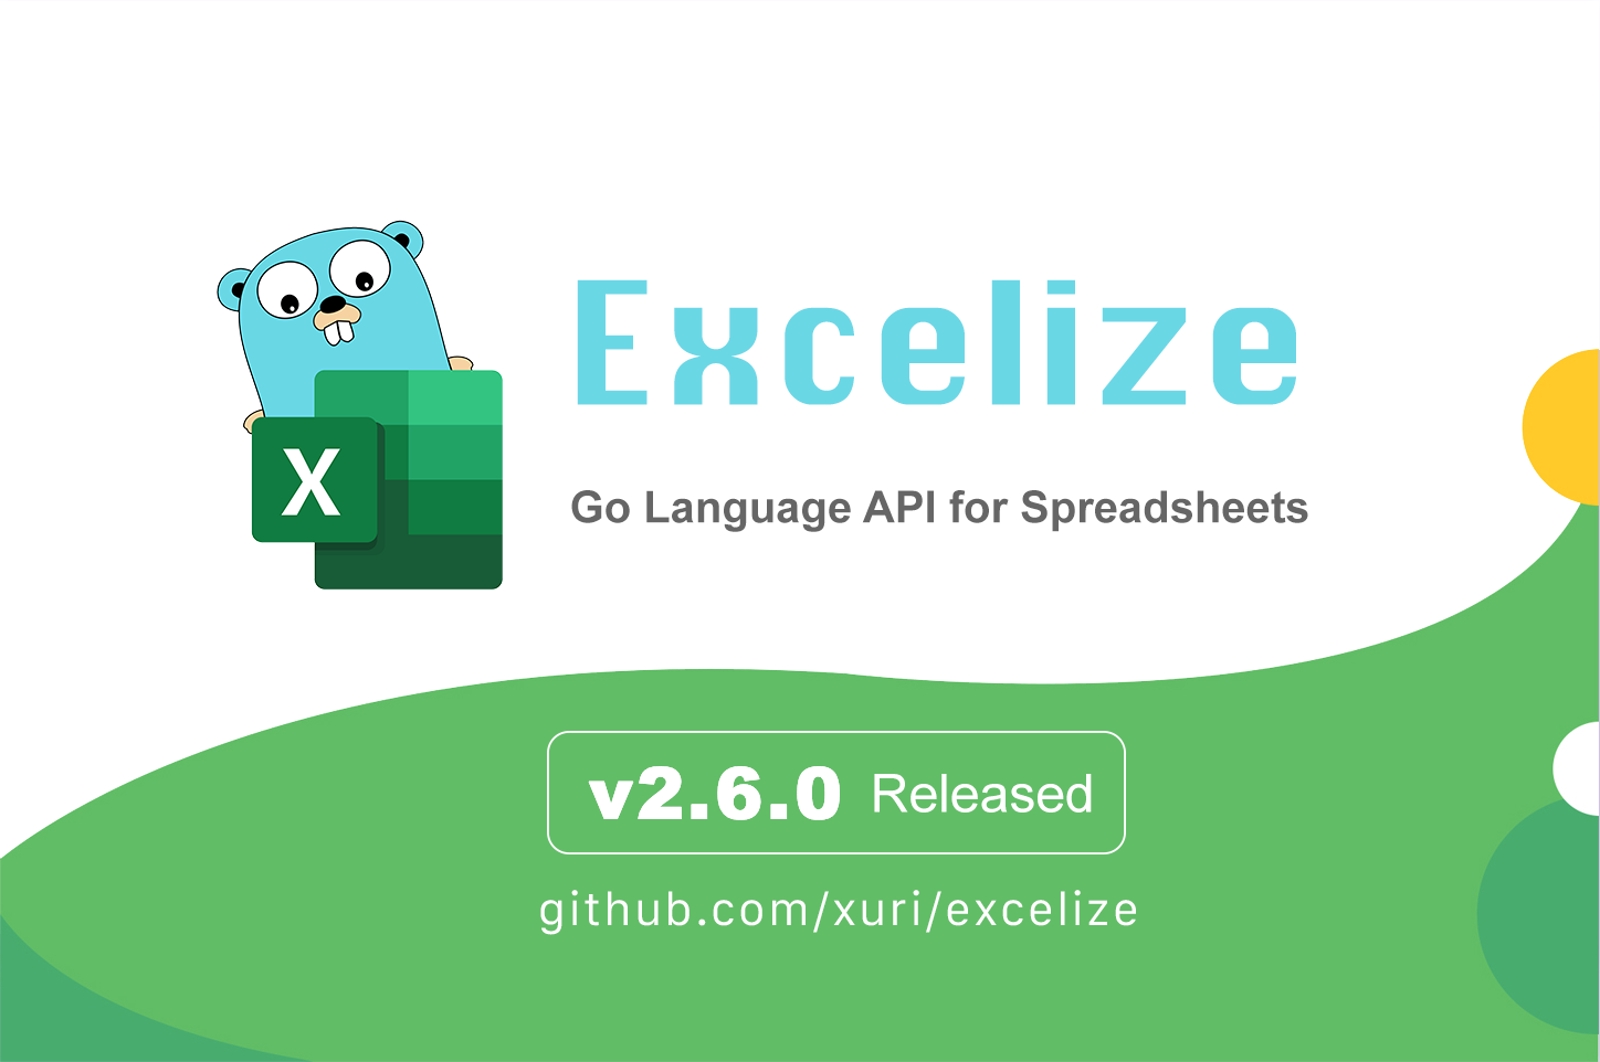 Go 言語スプレッドシートライブラリ：Excelize 2.6.0 がリリースされました